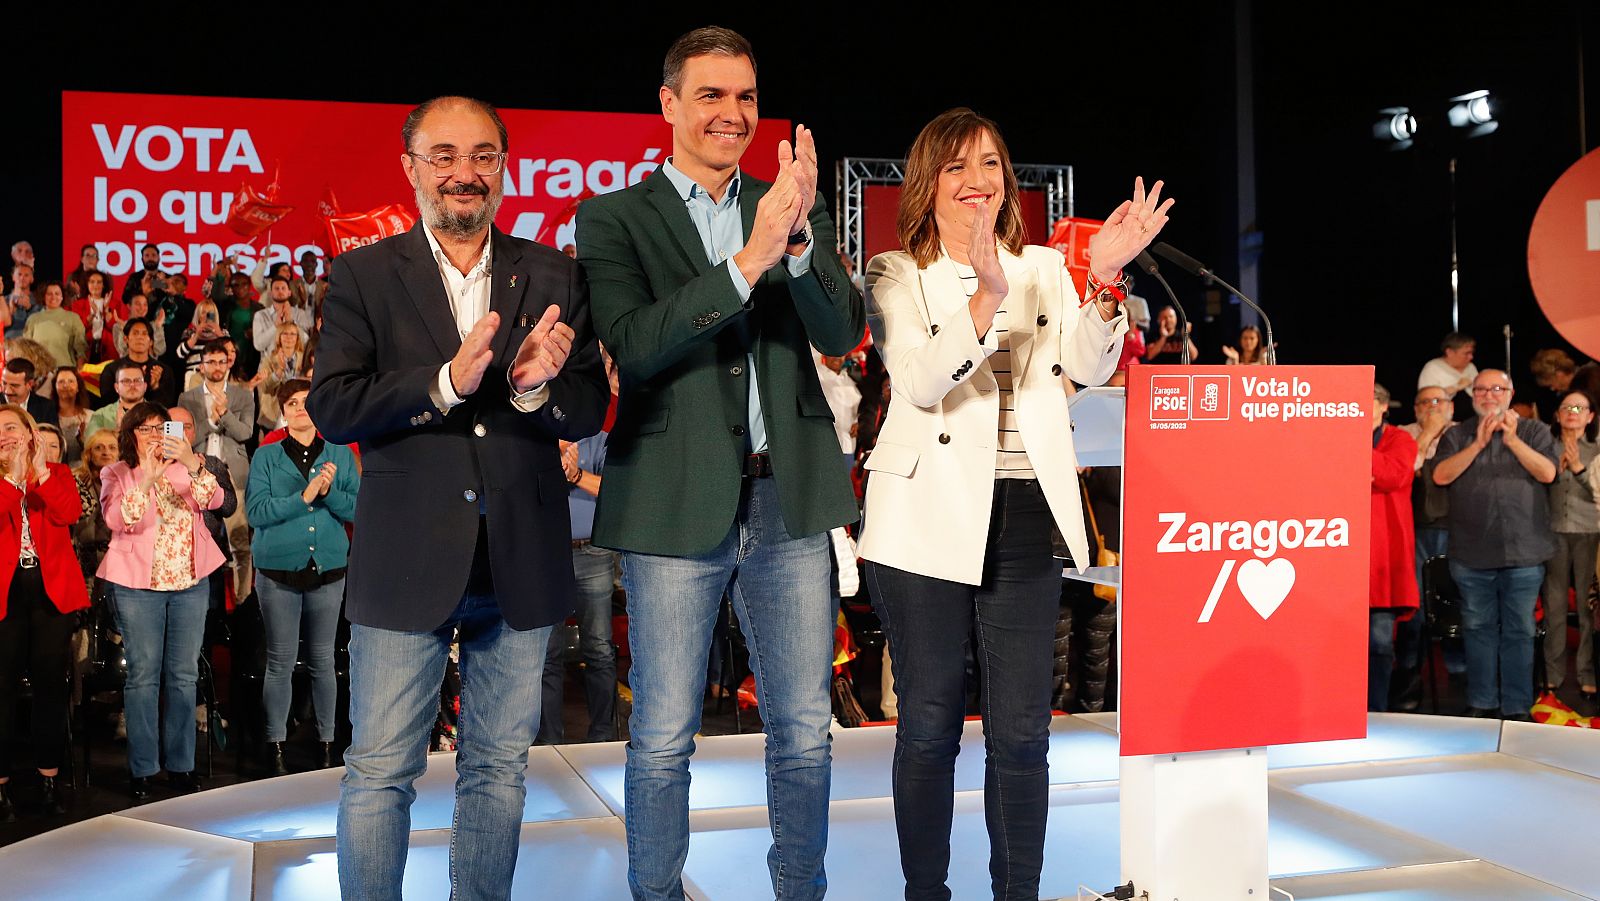 Campaña del PSOE en Zaragoza